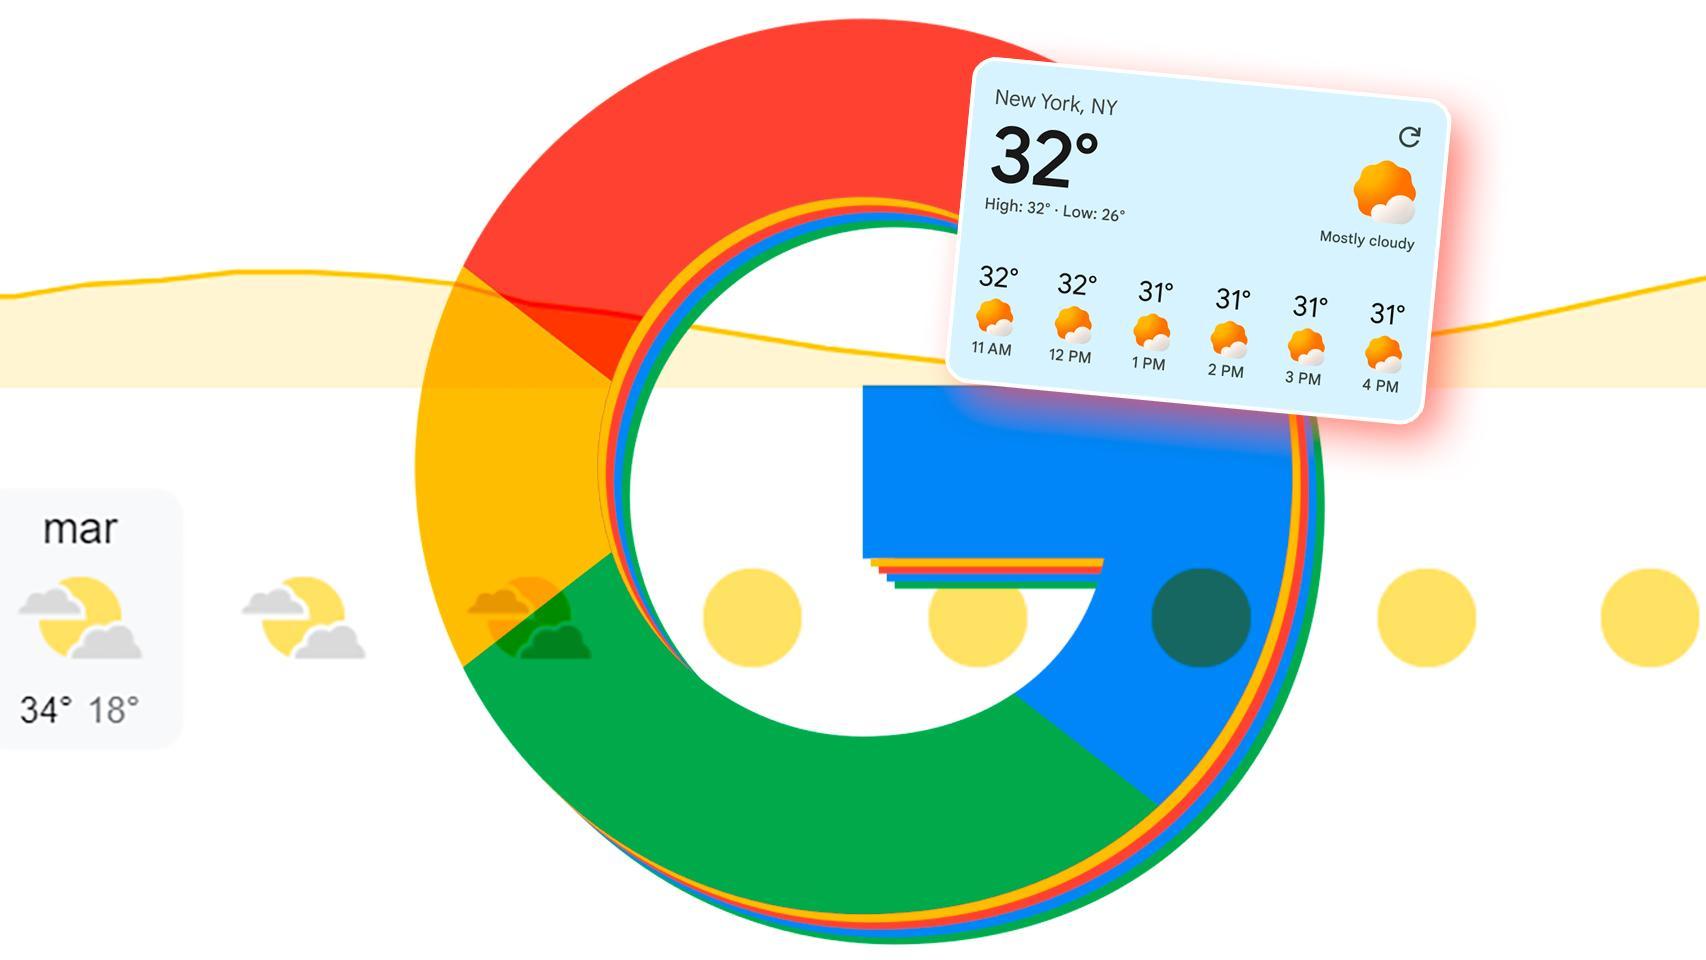 Descubre las mejoras en Google Weather con los nuevos widgets que incluyen un botón para actualizar el clima. Mantente informado